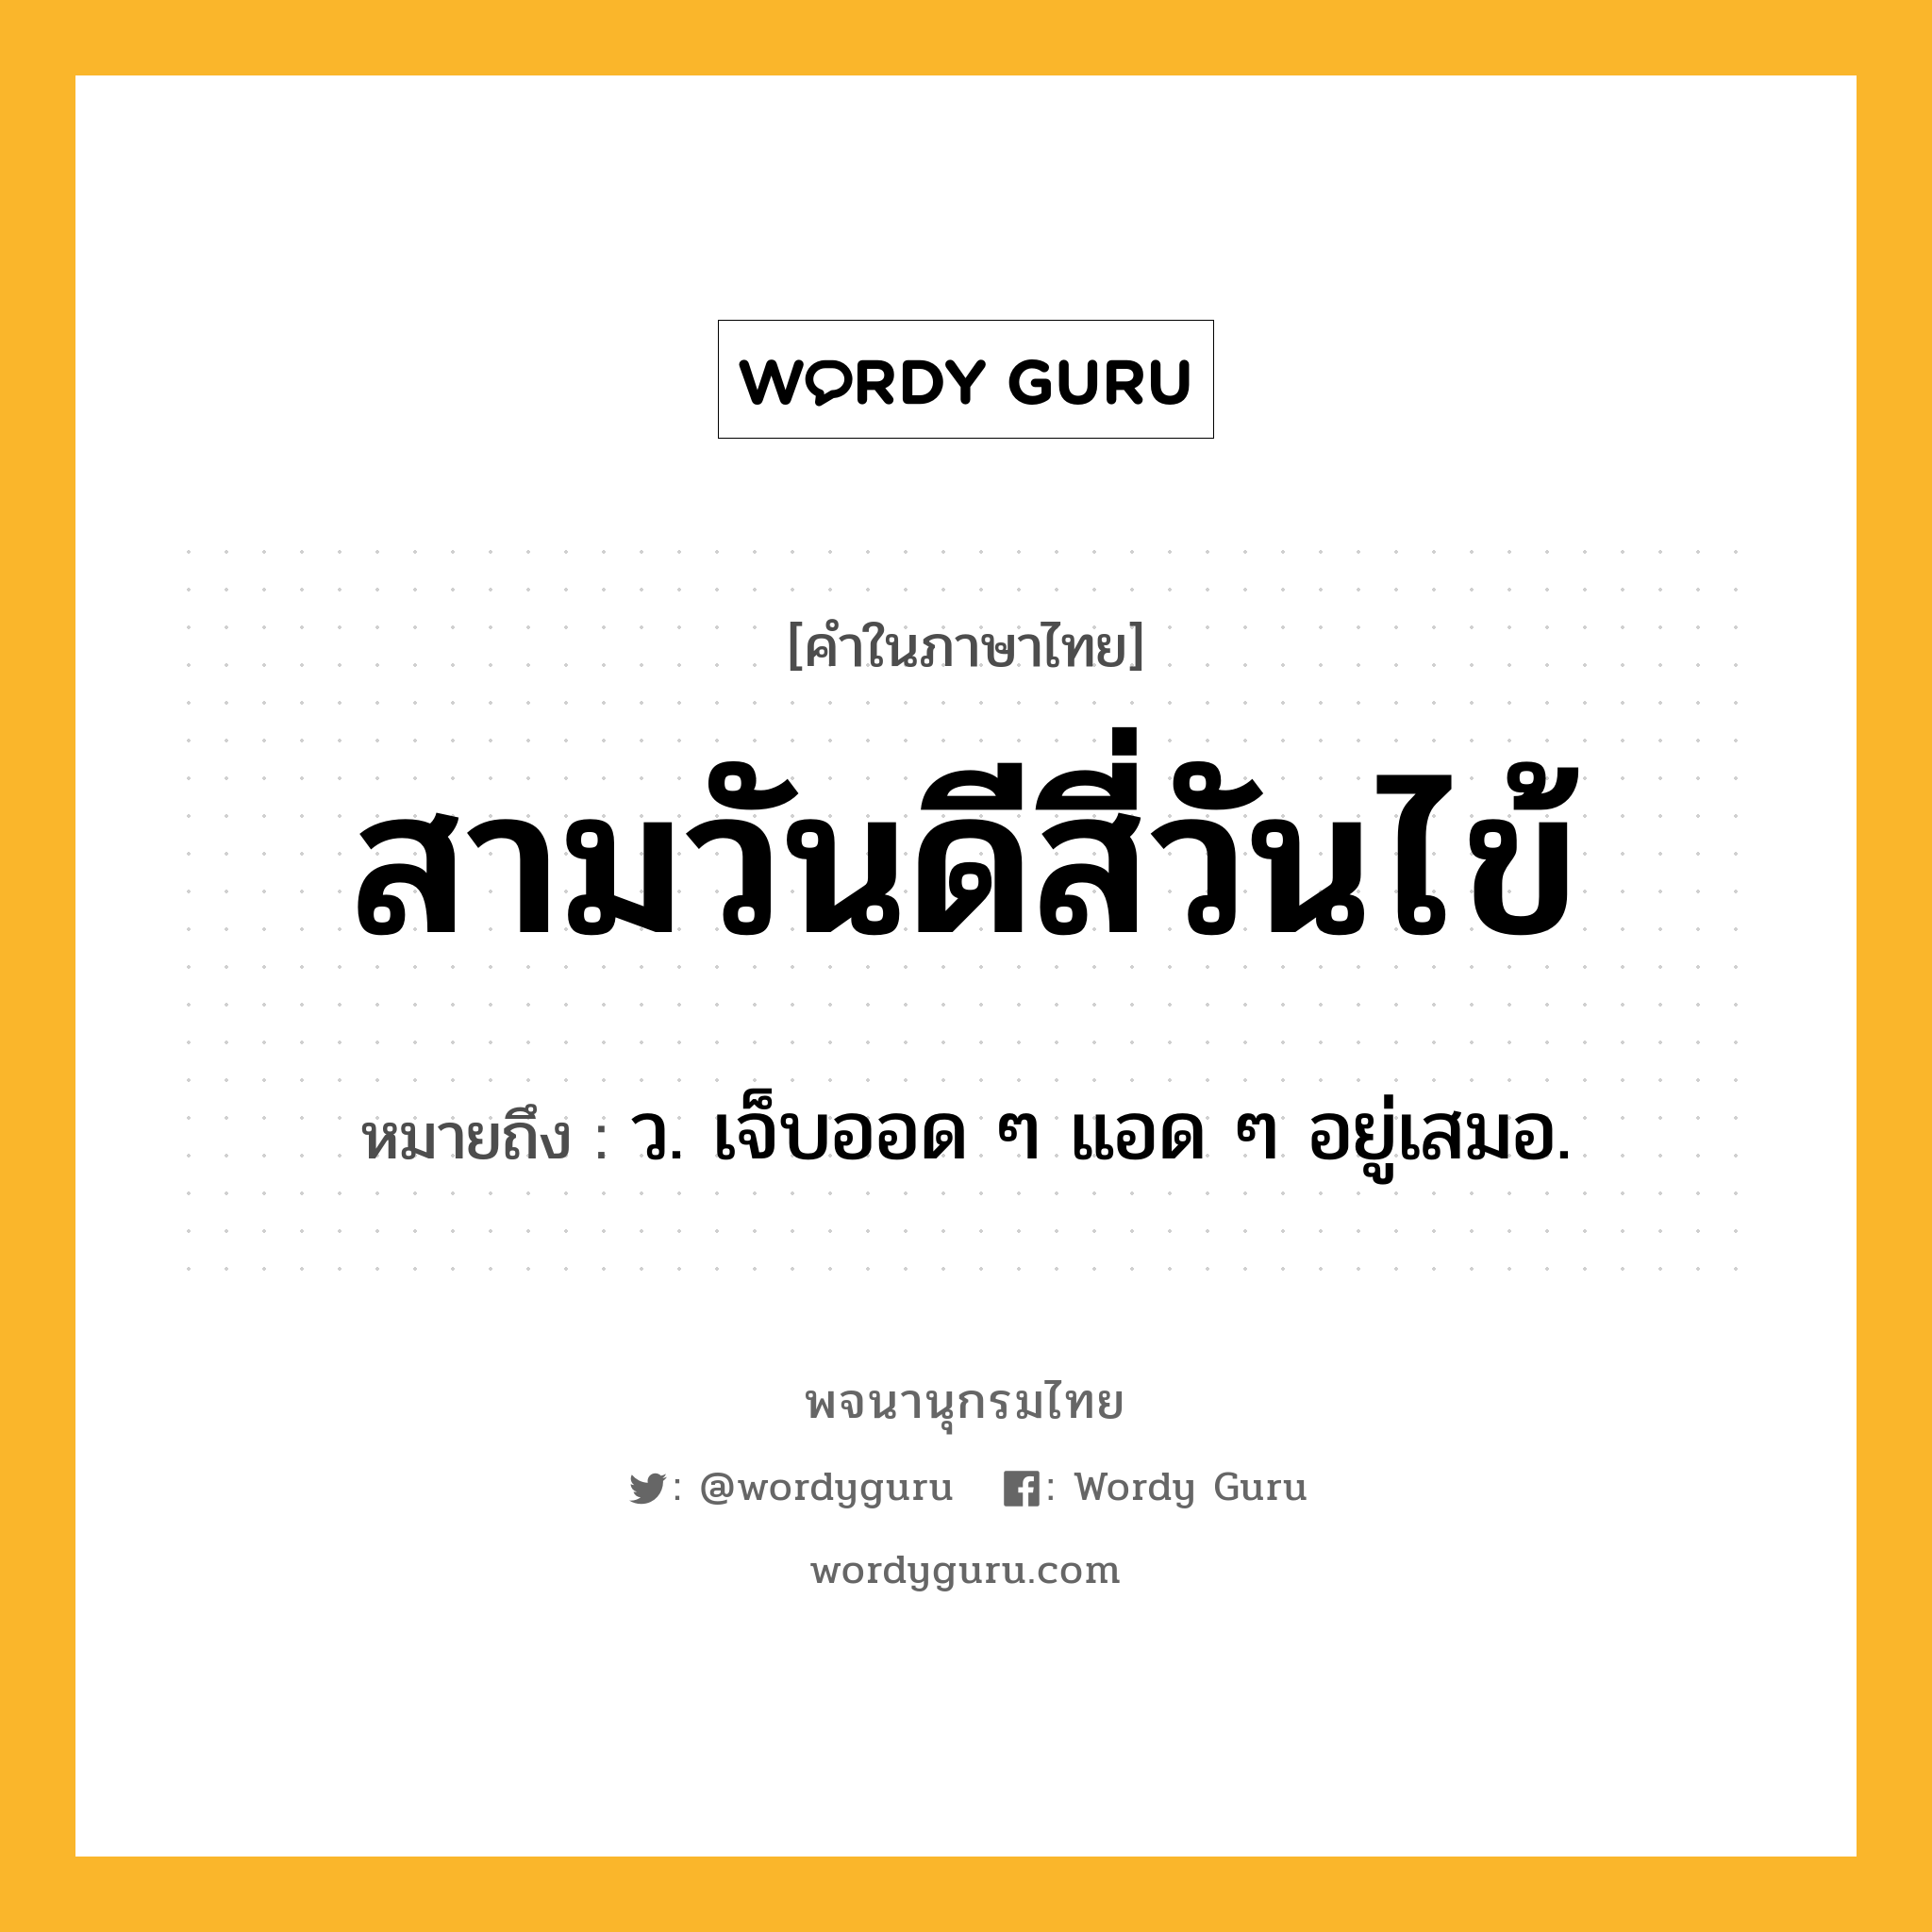 สามวันดีสี่วันไข้ ความหมาย หมายถึงอะไร?, คำในภาษาไทย สามวันดีสี่วันไข้ หมายถึง ว. เจ็บออด ๆ แอด ๆ อยู่เสมอ.